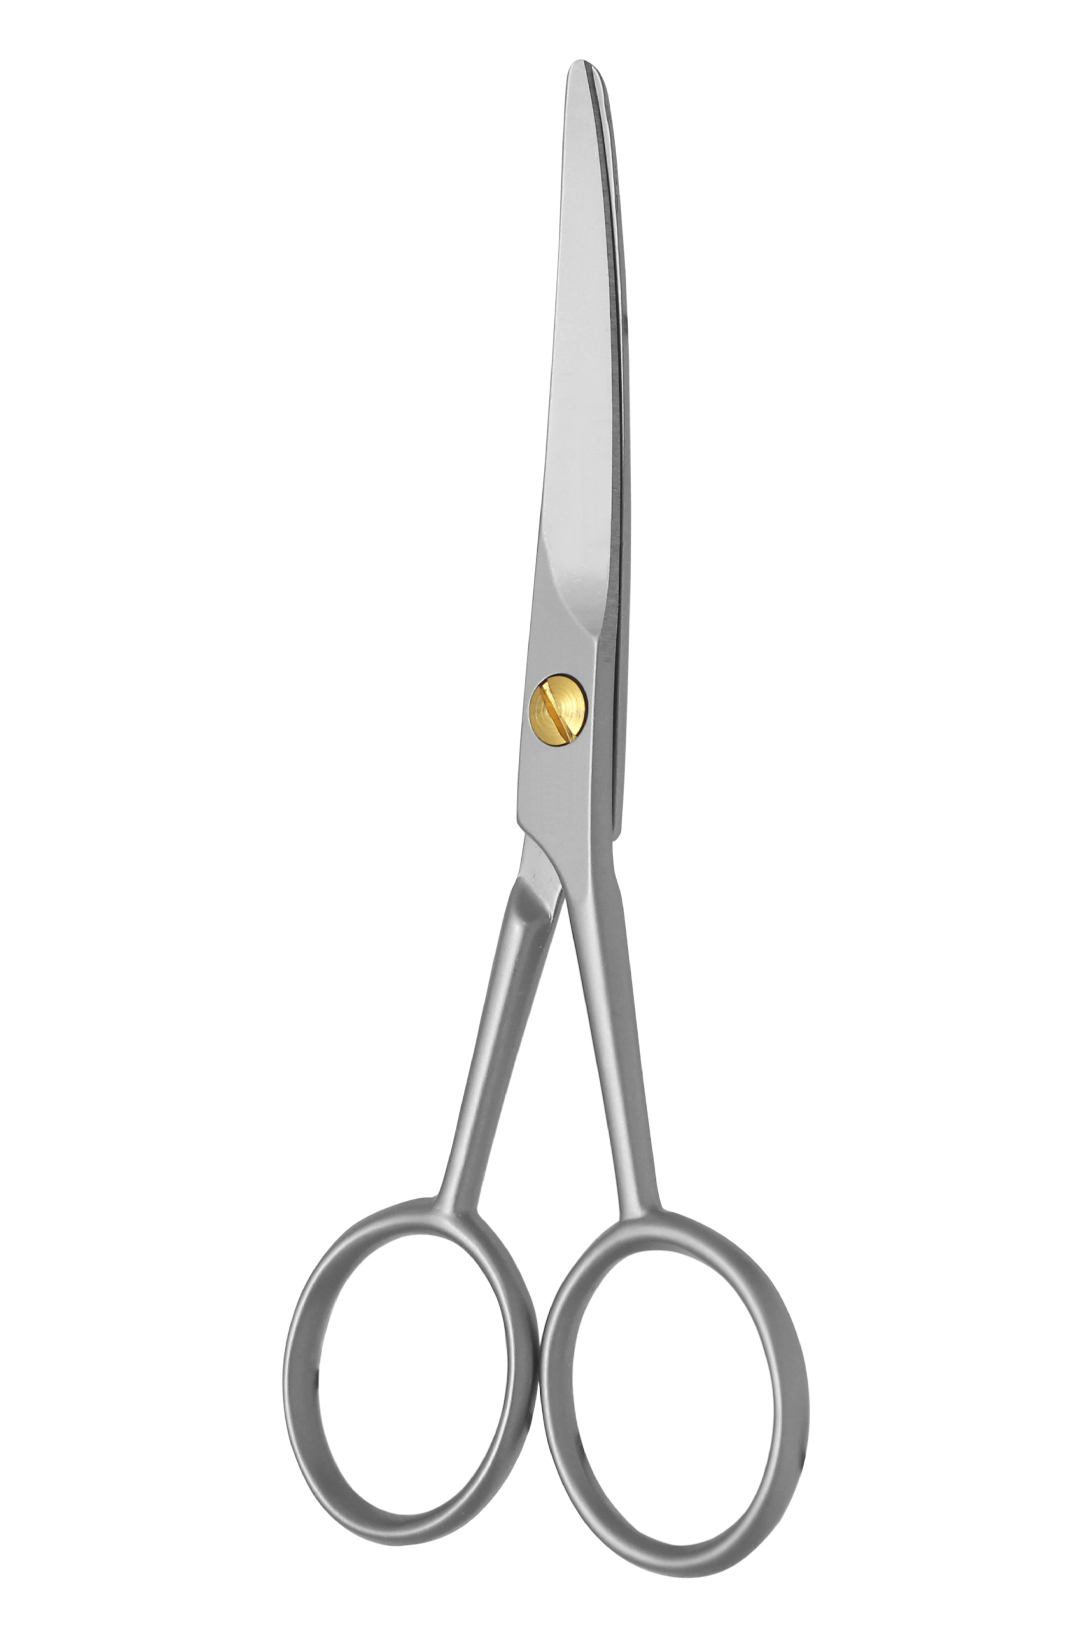 Excellent nose scissors 12 cm, curved cutting edge